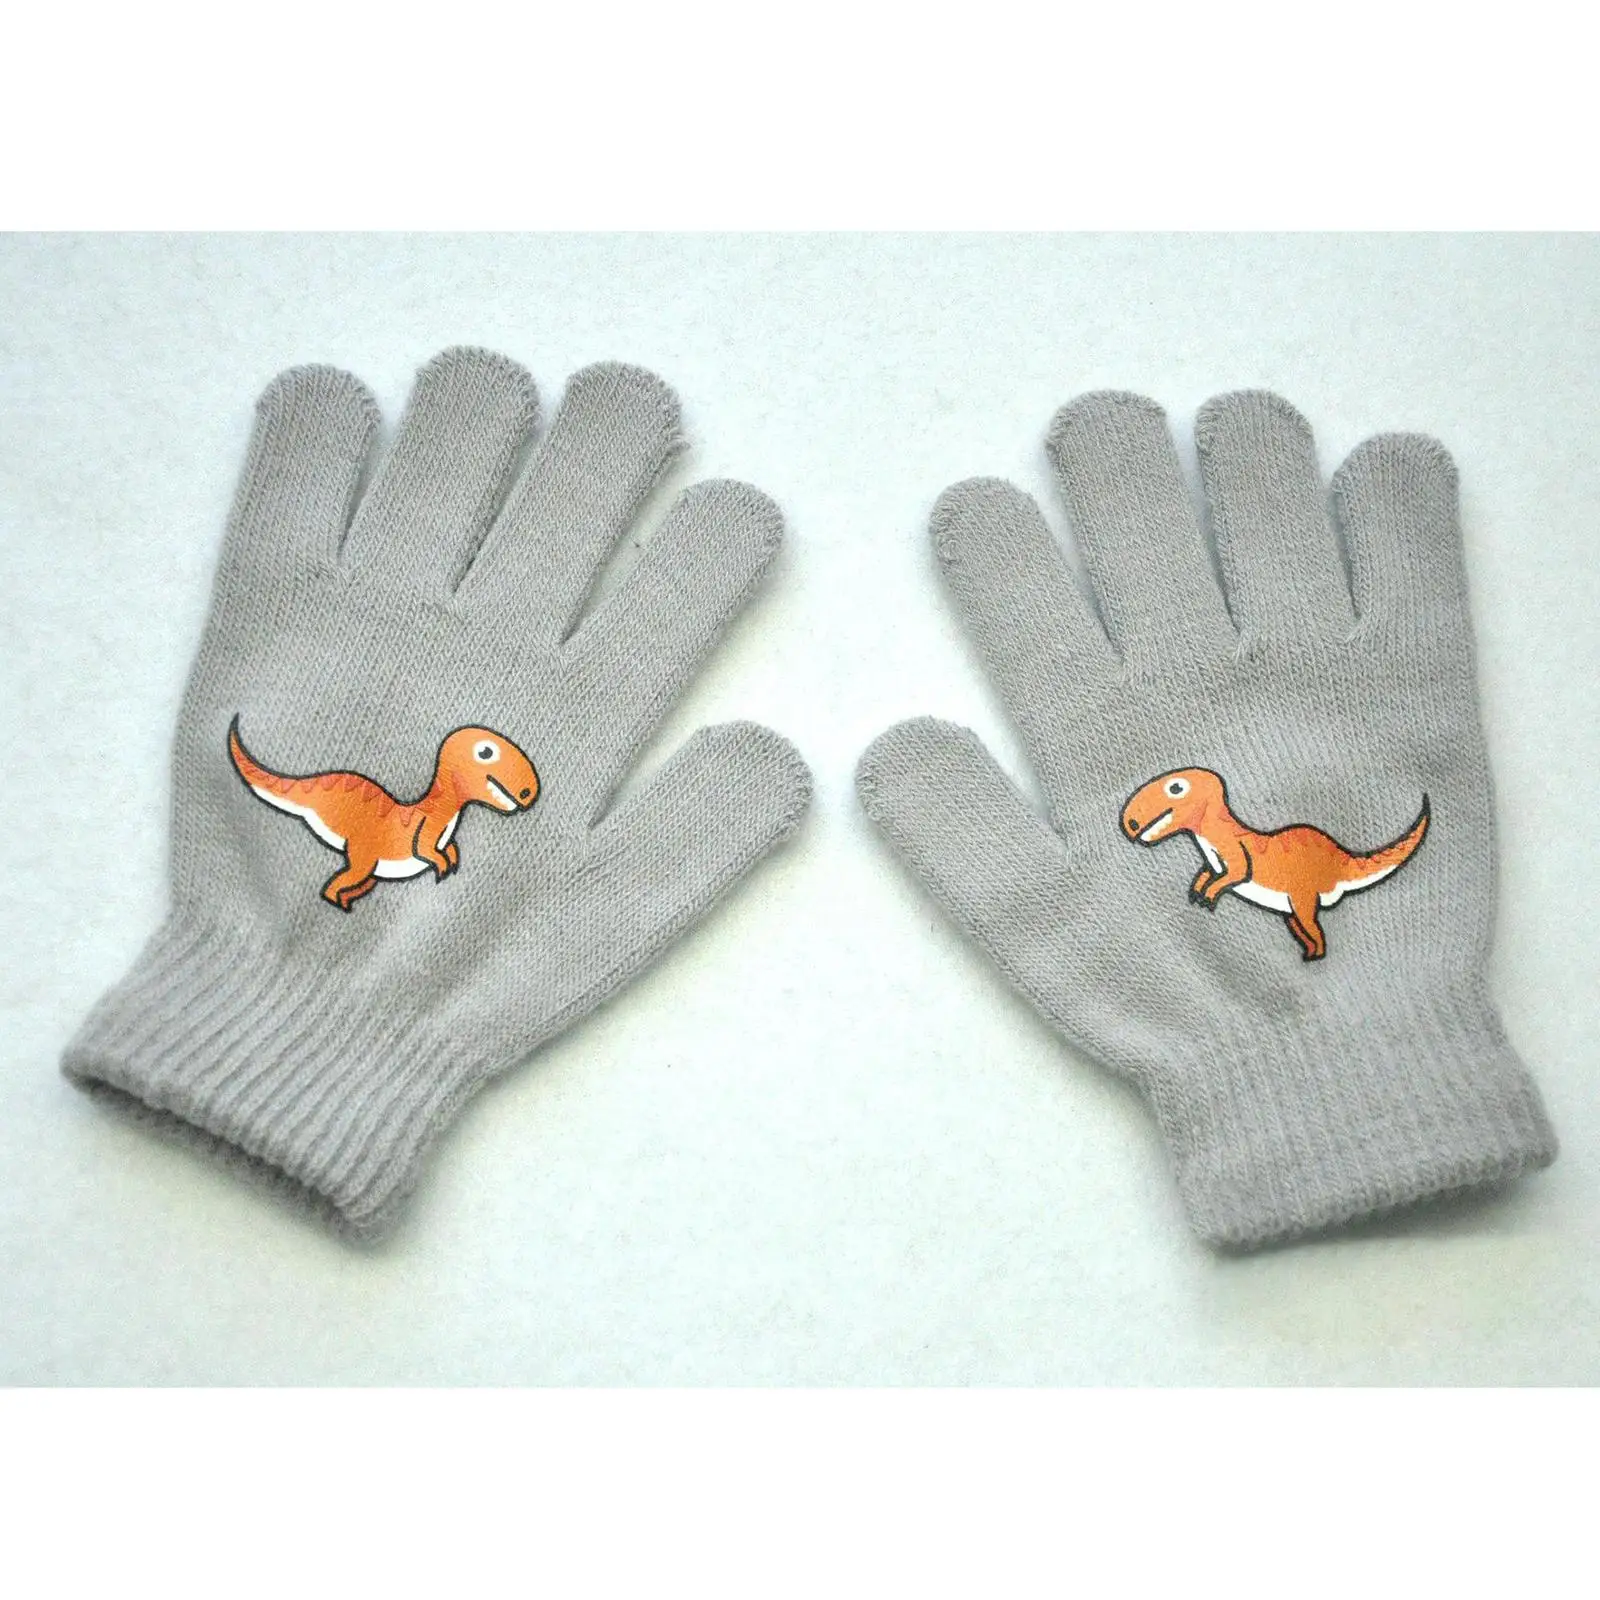 Kid Winter Gloves Winter Warm Stretchy Mitten Knit Gloves Girls Boys